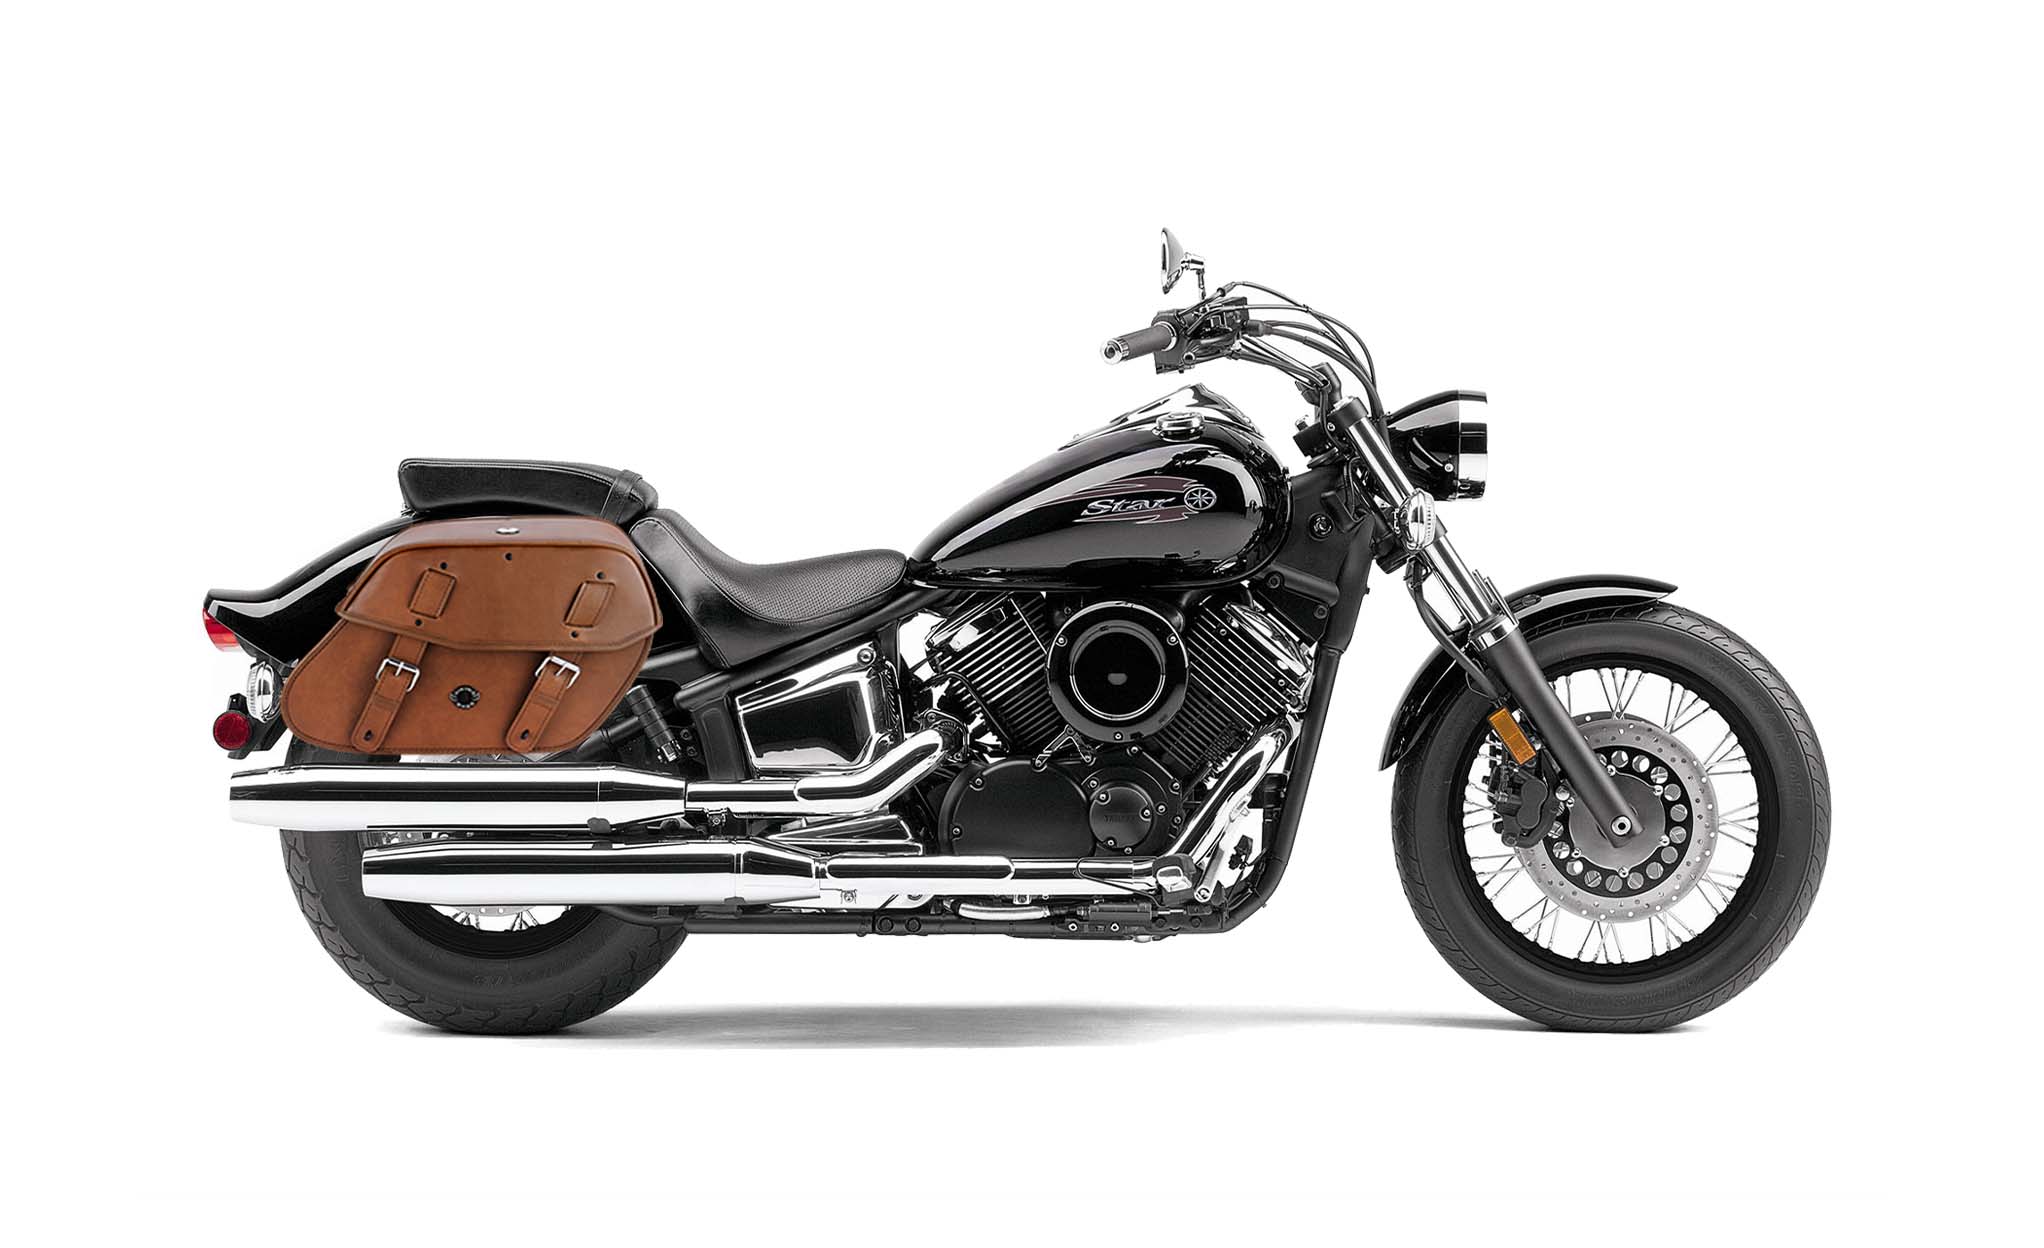 Viking Odin Brown Large Yamaha V Star 1100 Custom Xvs11T Leather Motorcycle Saddlebags on Bike Photo @expand